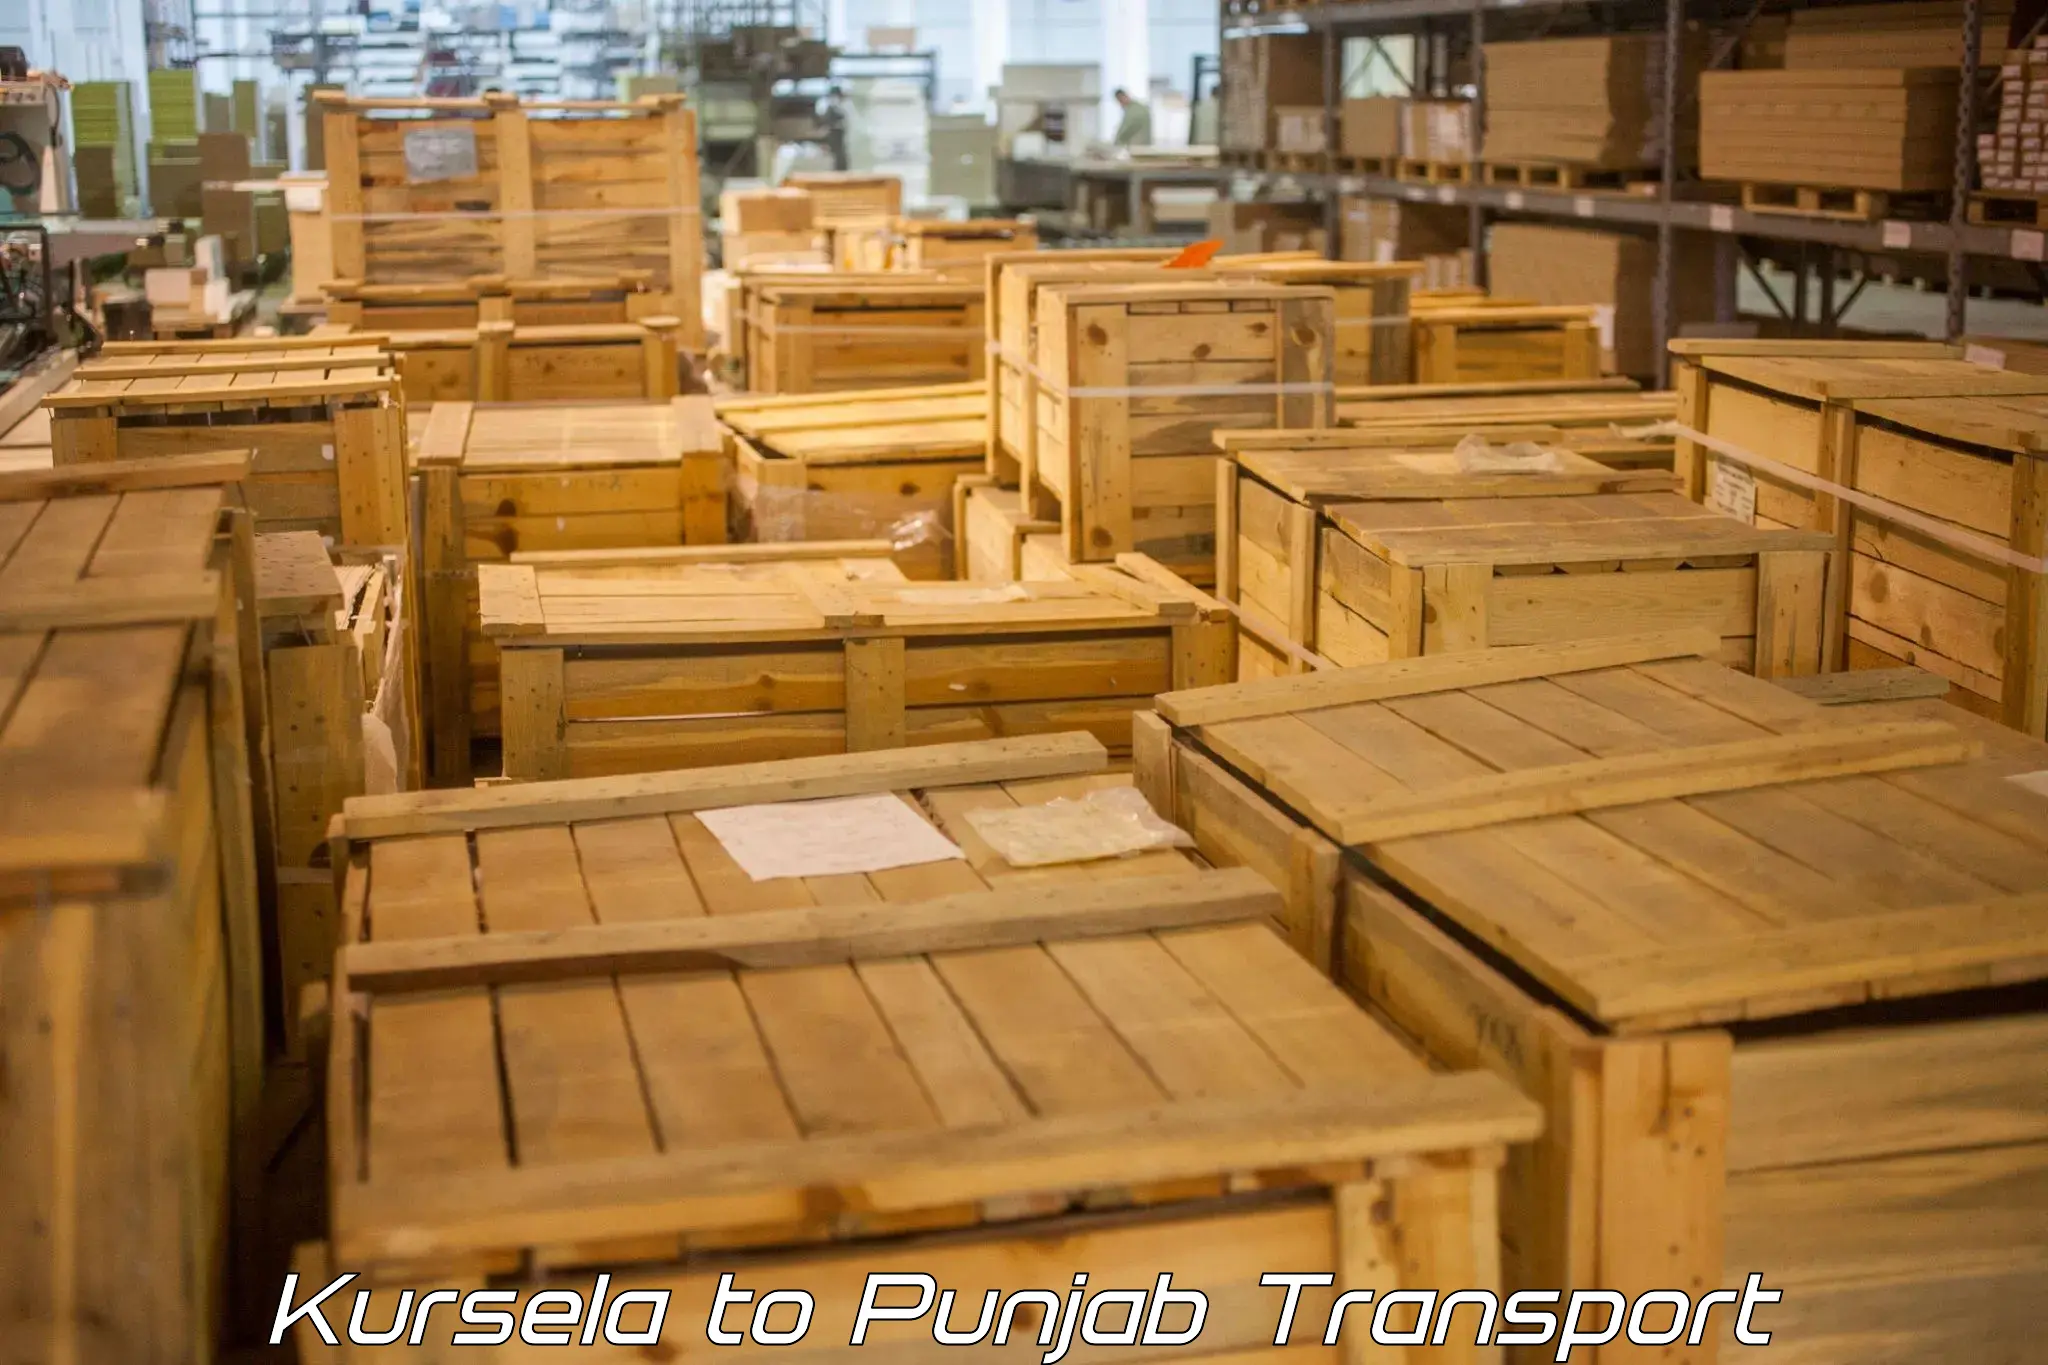 Container transport service Kursela to Dinanagar